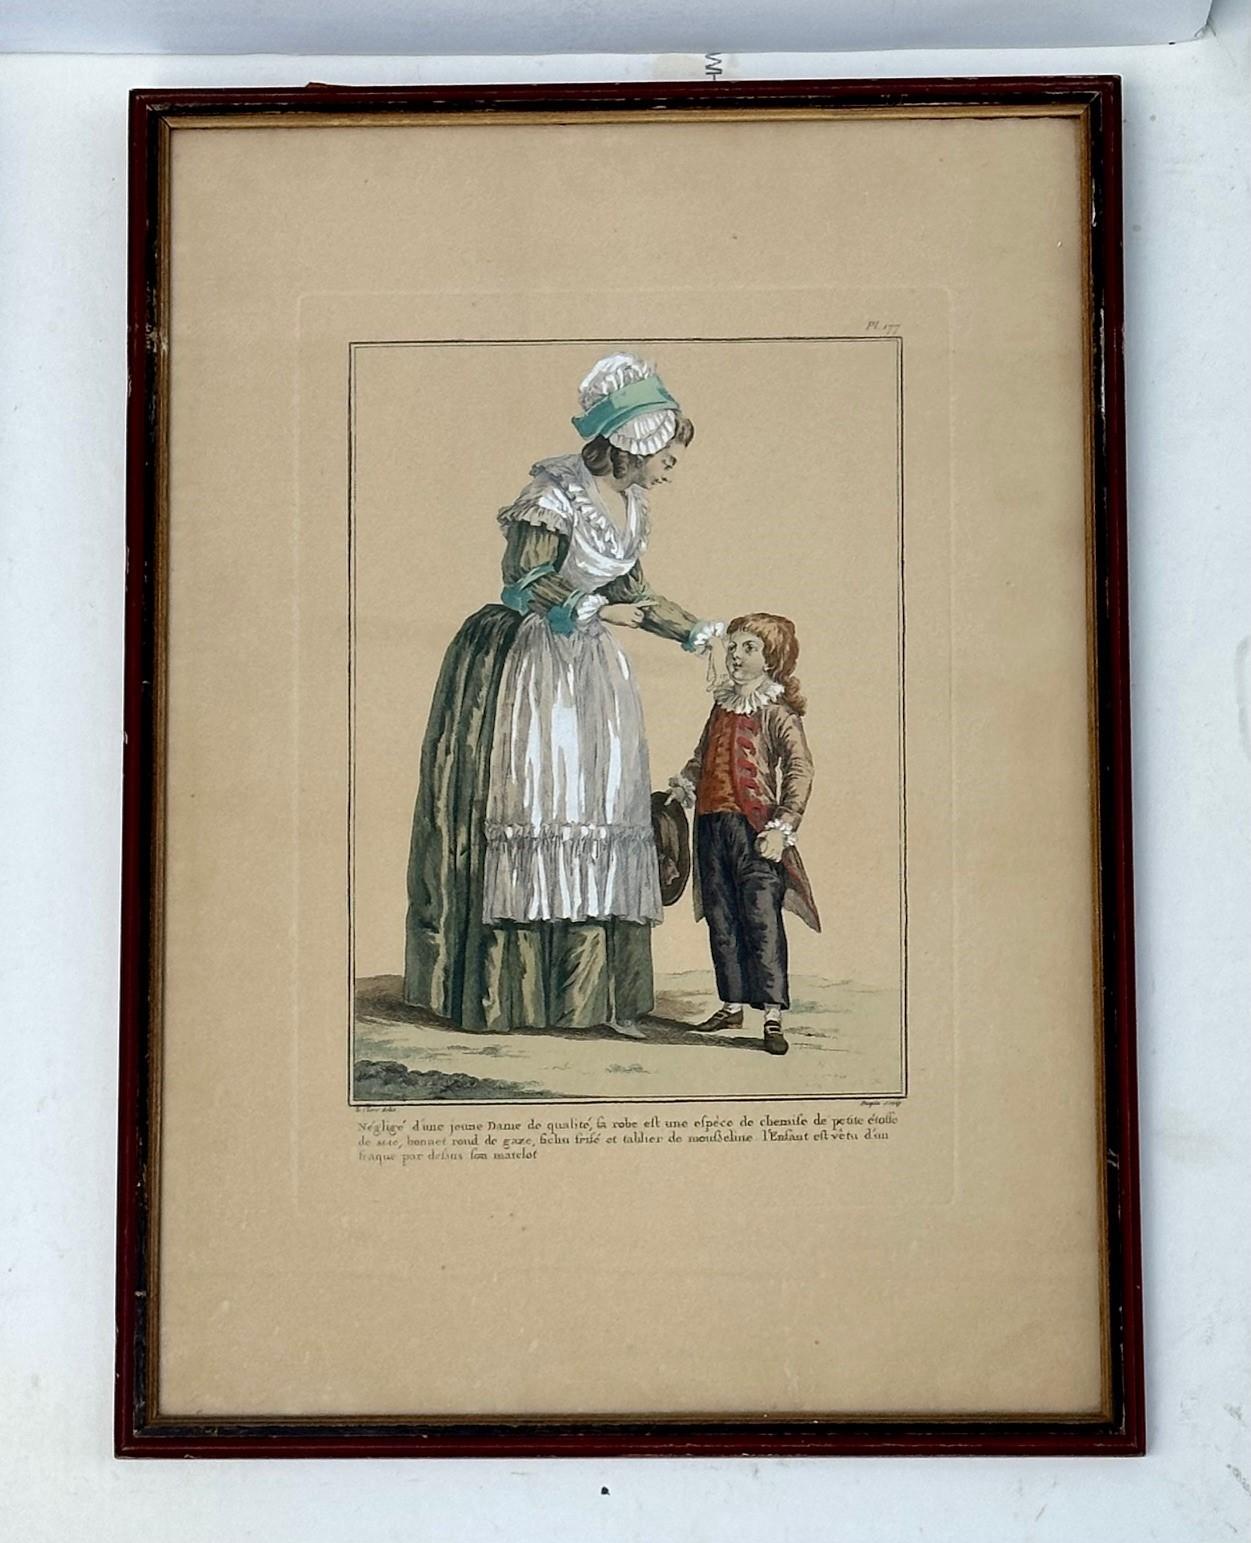 Gravure française colorée à la main Galerie des modes Costumes françaises, 1779

Rare gravure de mode française ancienne coloriée à la main publiée pour la première fois à Paris en 1779. Les compositions sont basées sur les vêtements et les